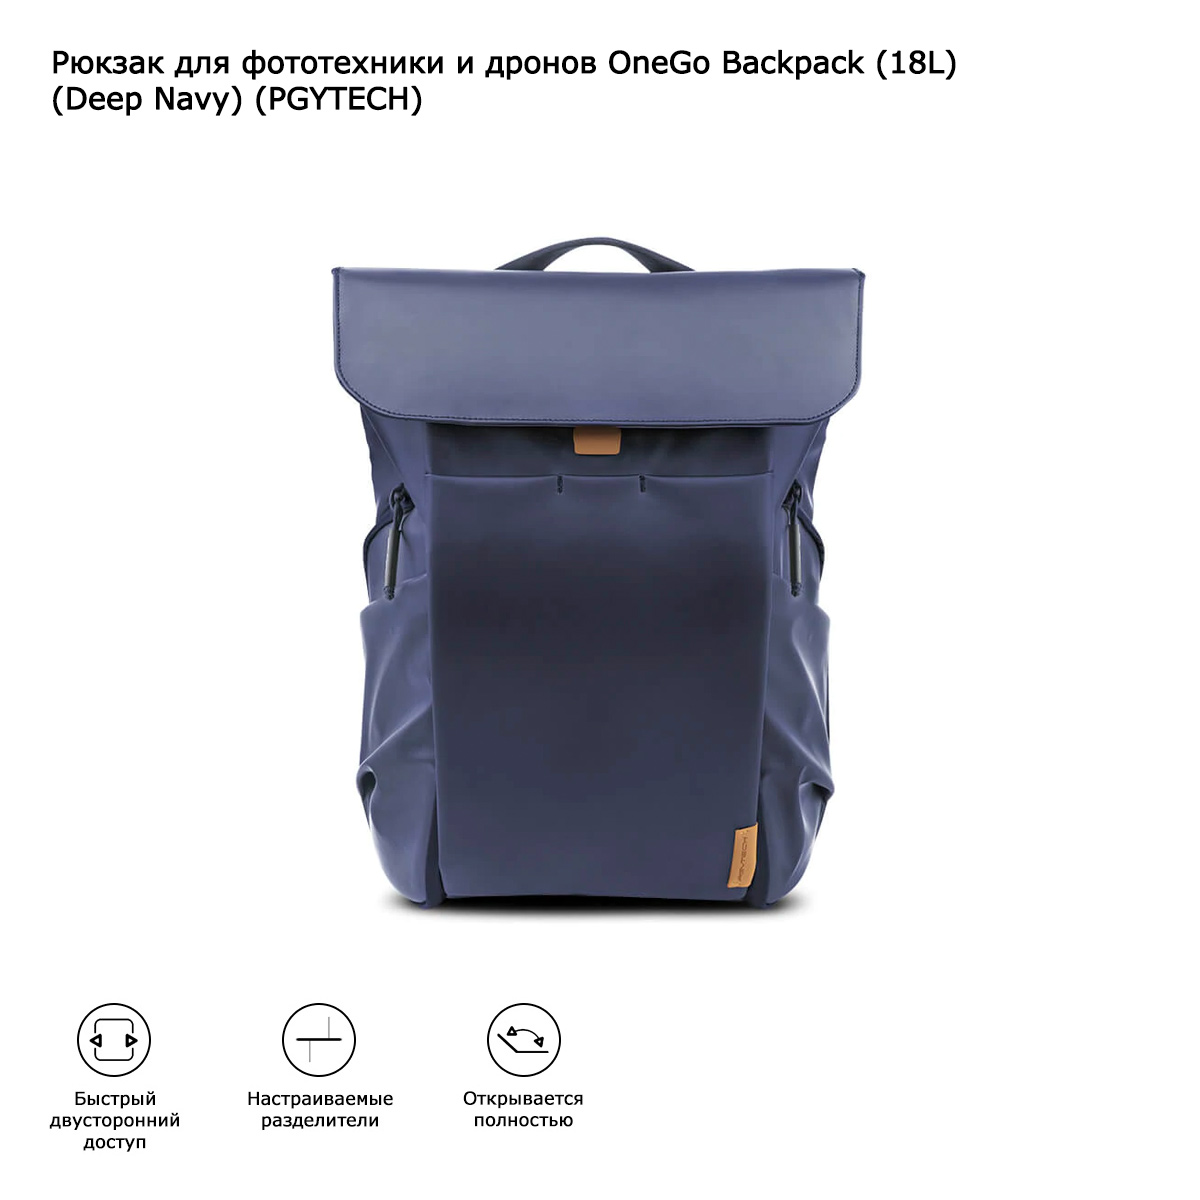 Рюкзак для фототехники и дронов OneGo Backpack (18L) (Deep Navy) (PGYTECH) (P-CB-030)